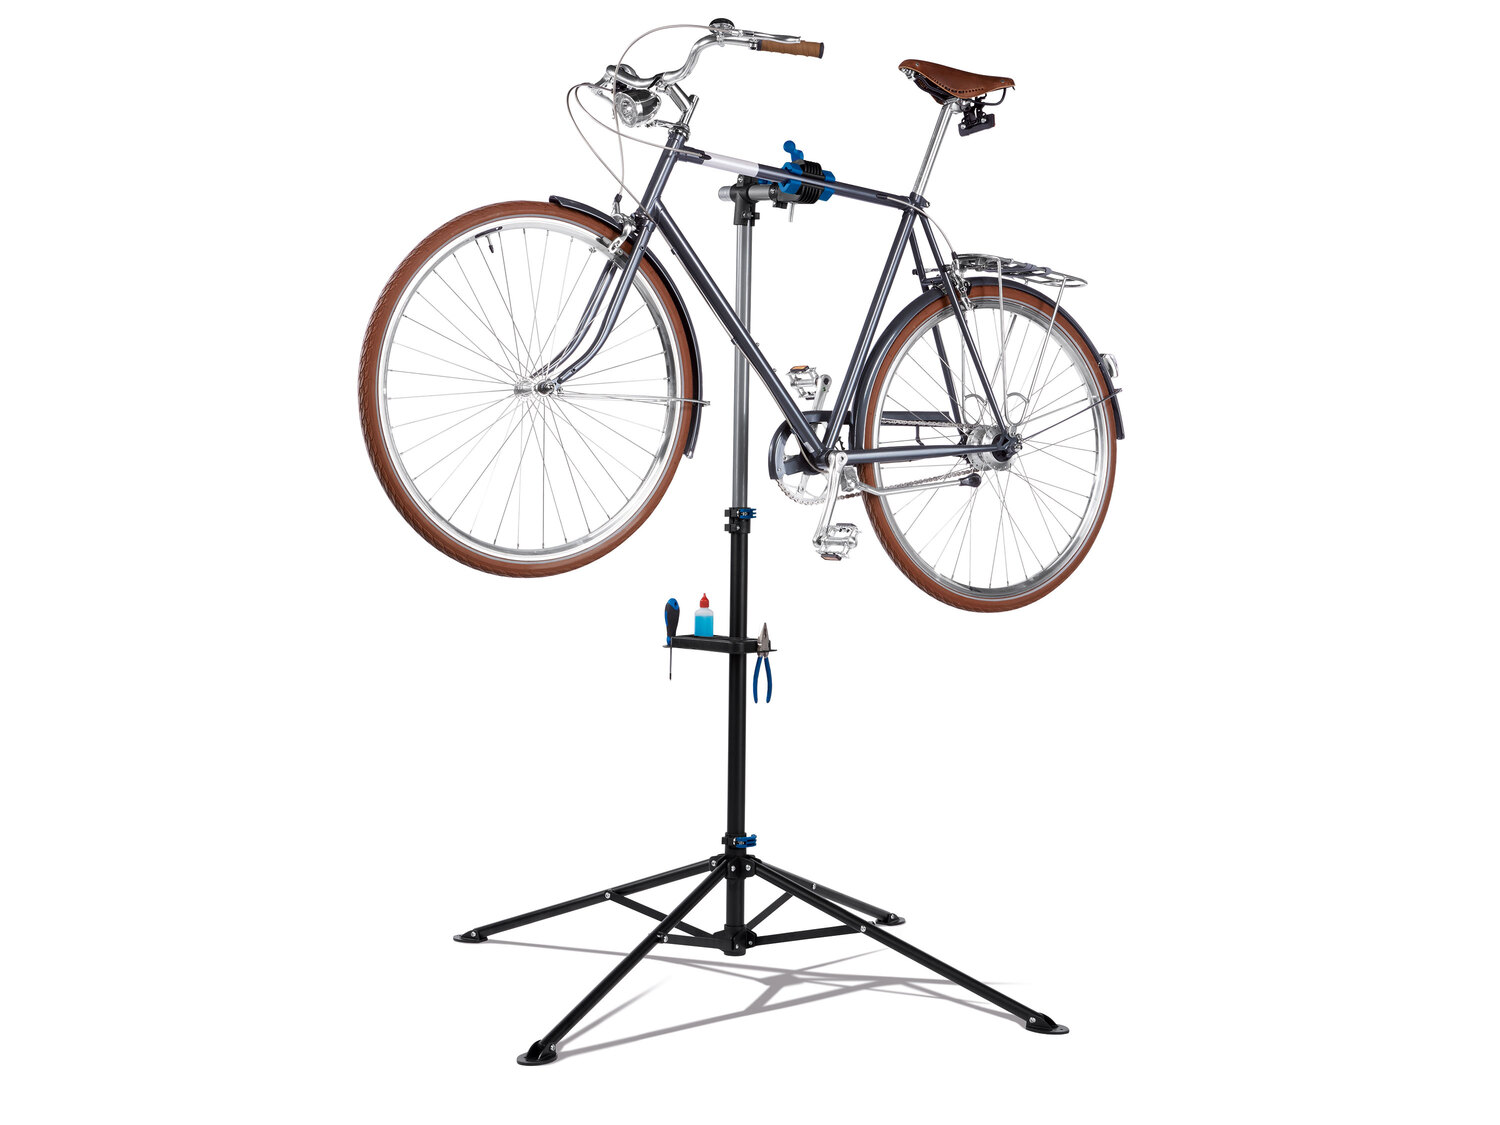 Stojak montażowy do roweru Crivit, cena 149,00 PLN 
- rozłożony: ok. 188 x 104 ...